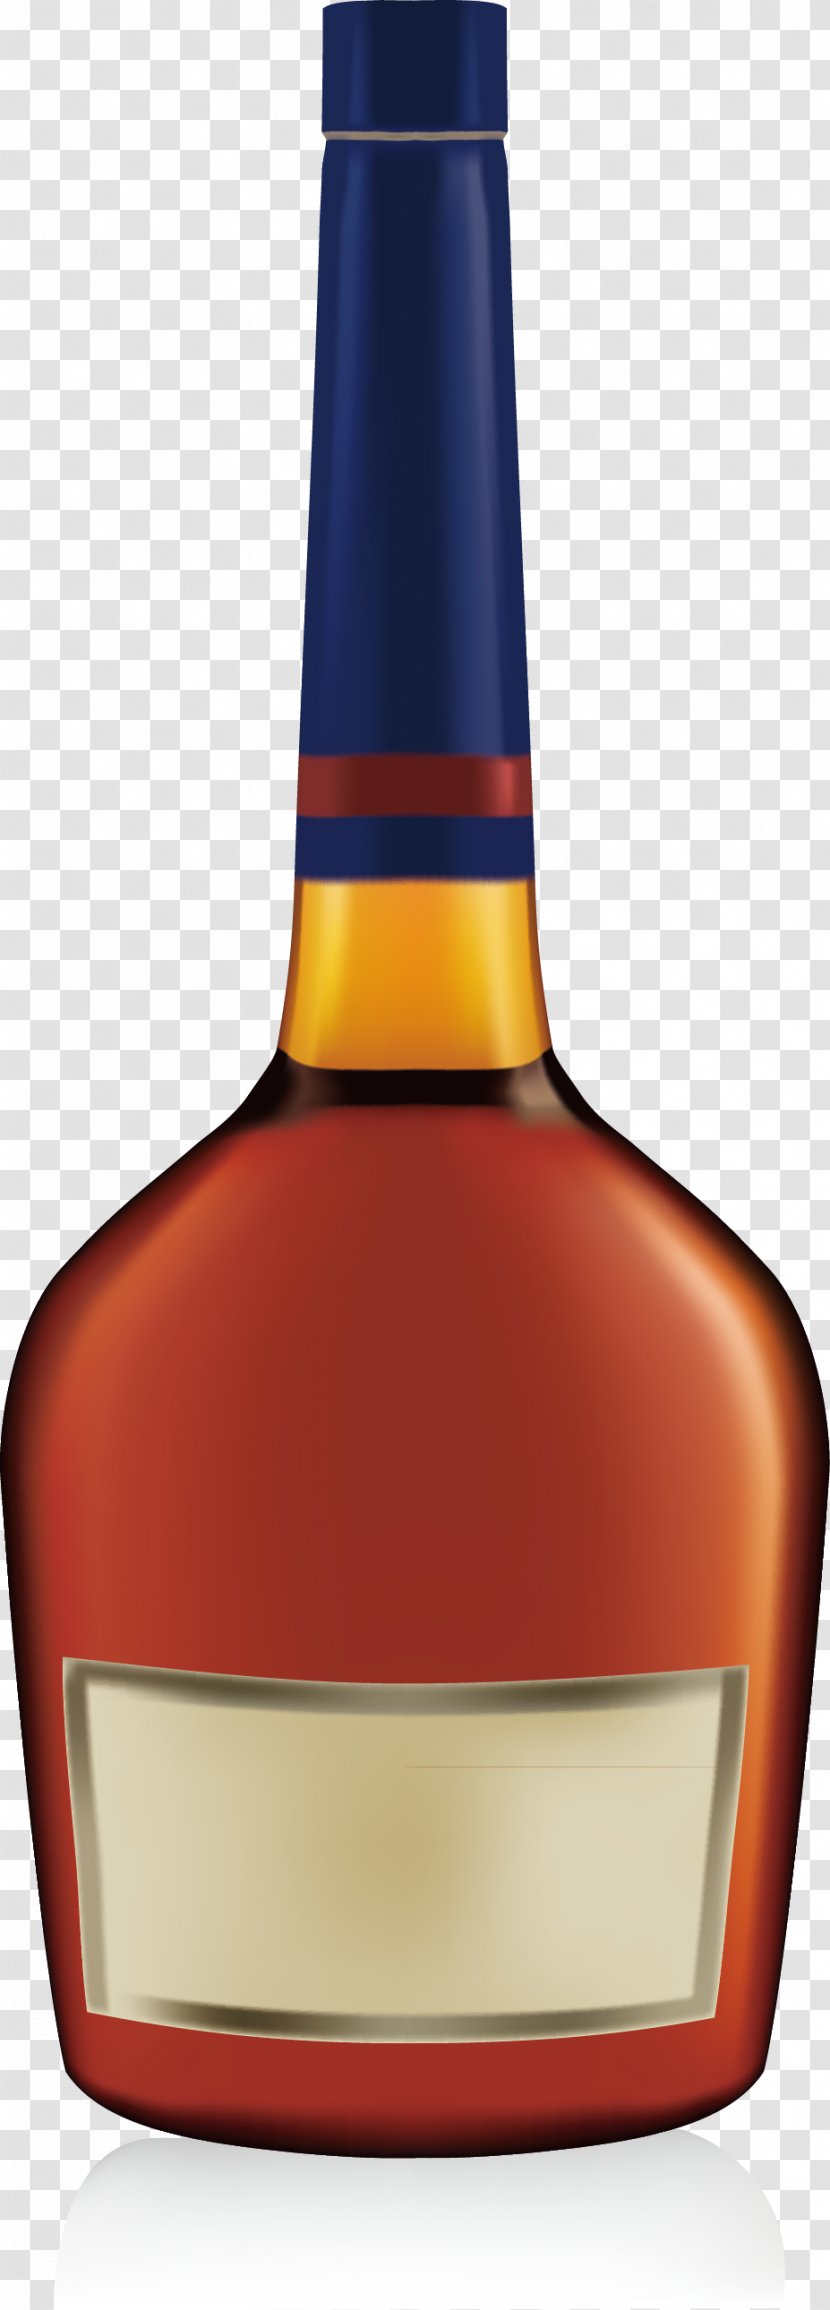 Whisky Brandy Cognac Wine Bottle - Distilled Beverage - Blue Classic Transparent PNG